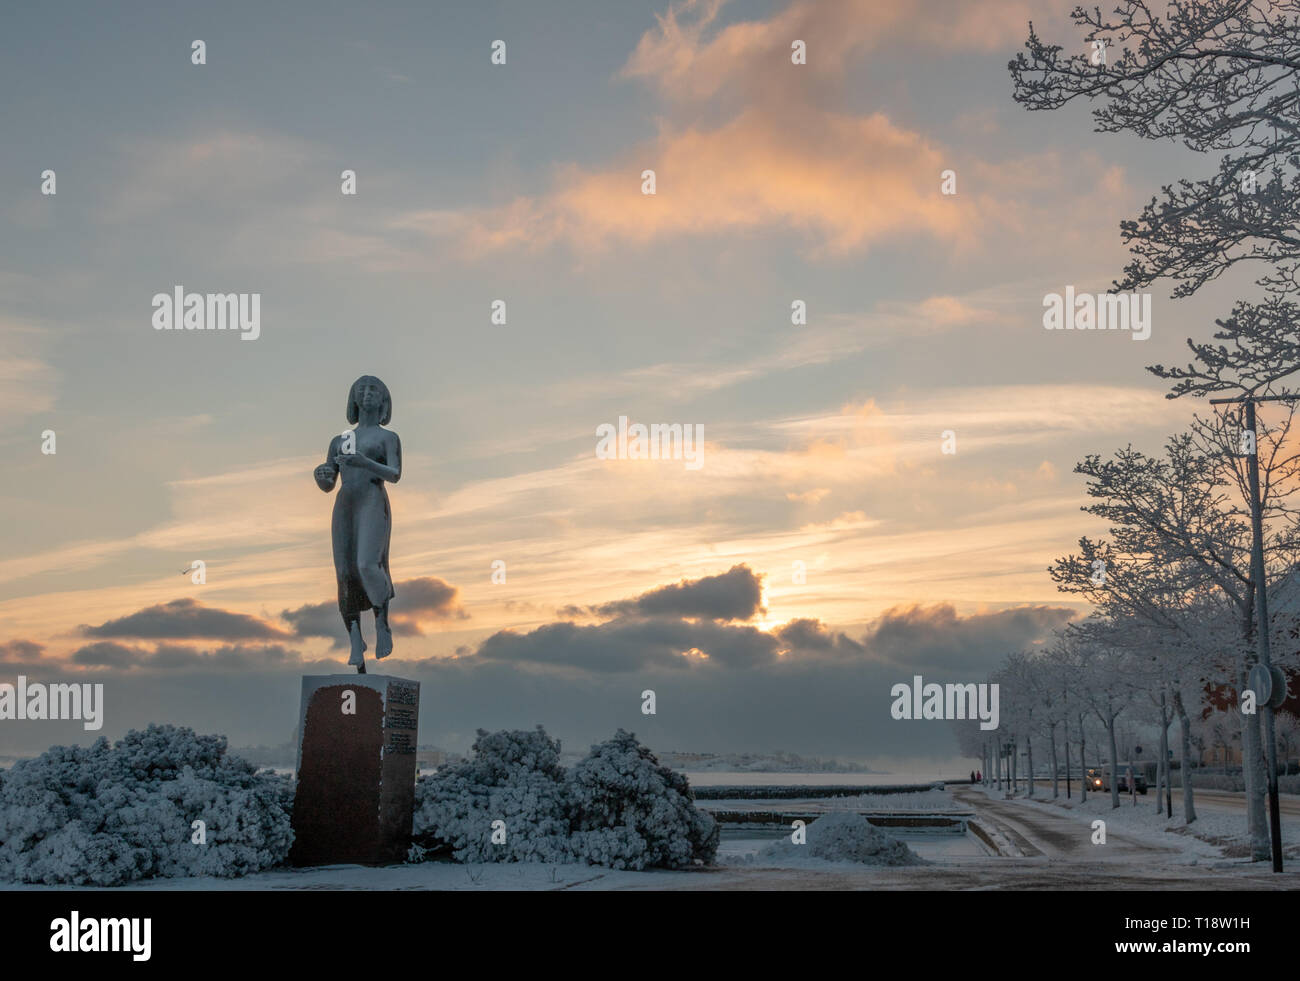 HELSINKI, Finlandia - Enero 08, 2015: El Rauhanpatsas (la estatua de la Paz) en Helsinki, Finlandia, en el invierno Foto de stock